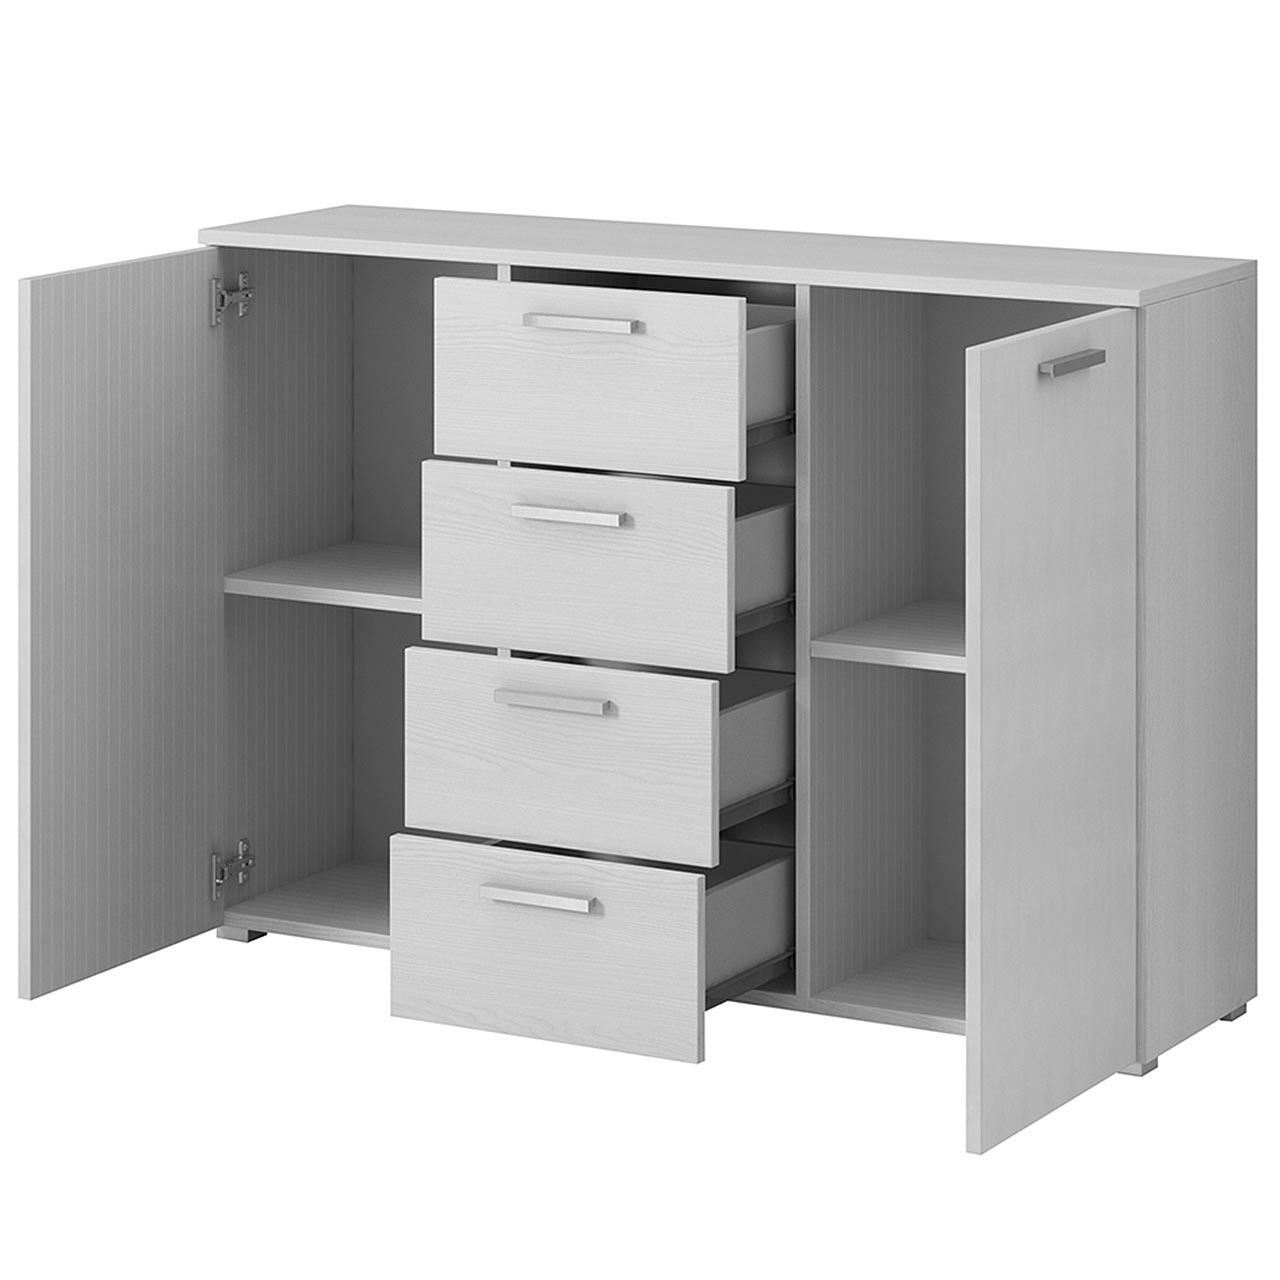 Storage cabinet GALAXY GX26 abisko ash